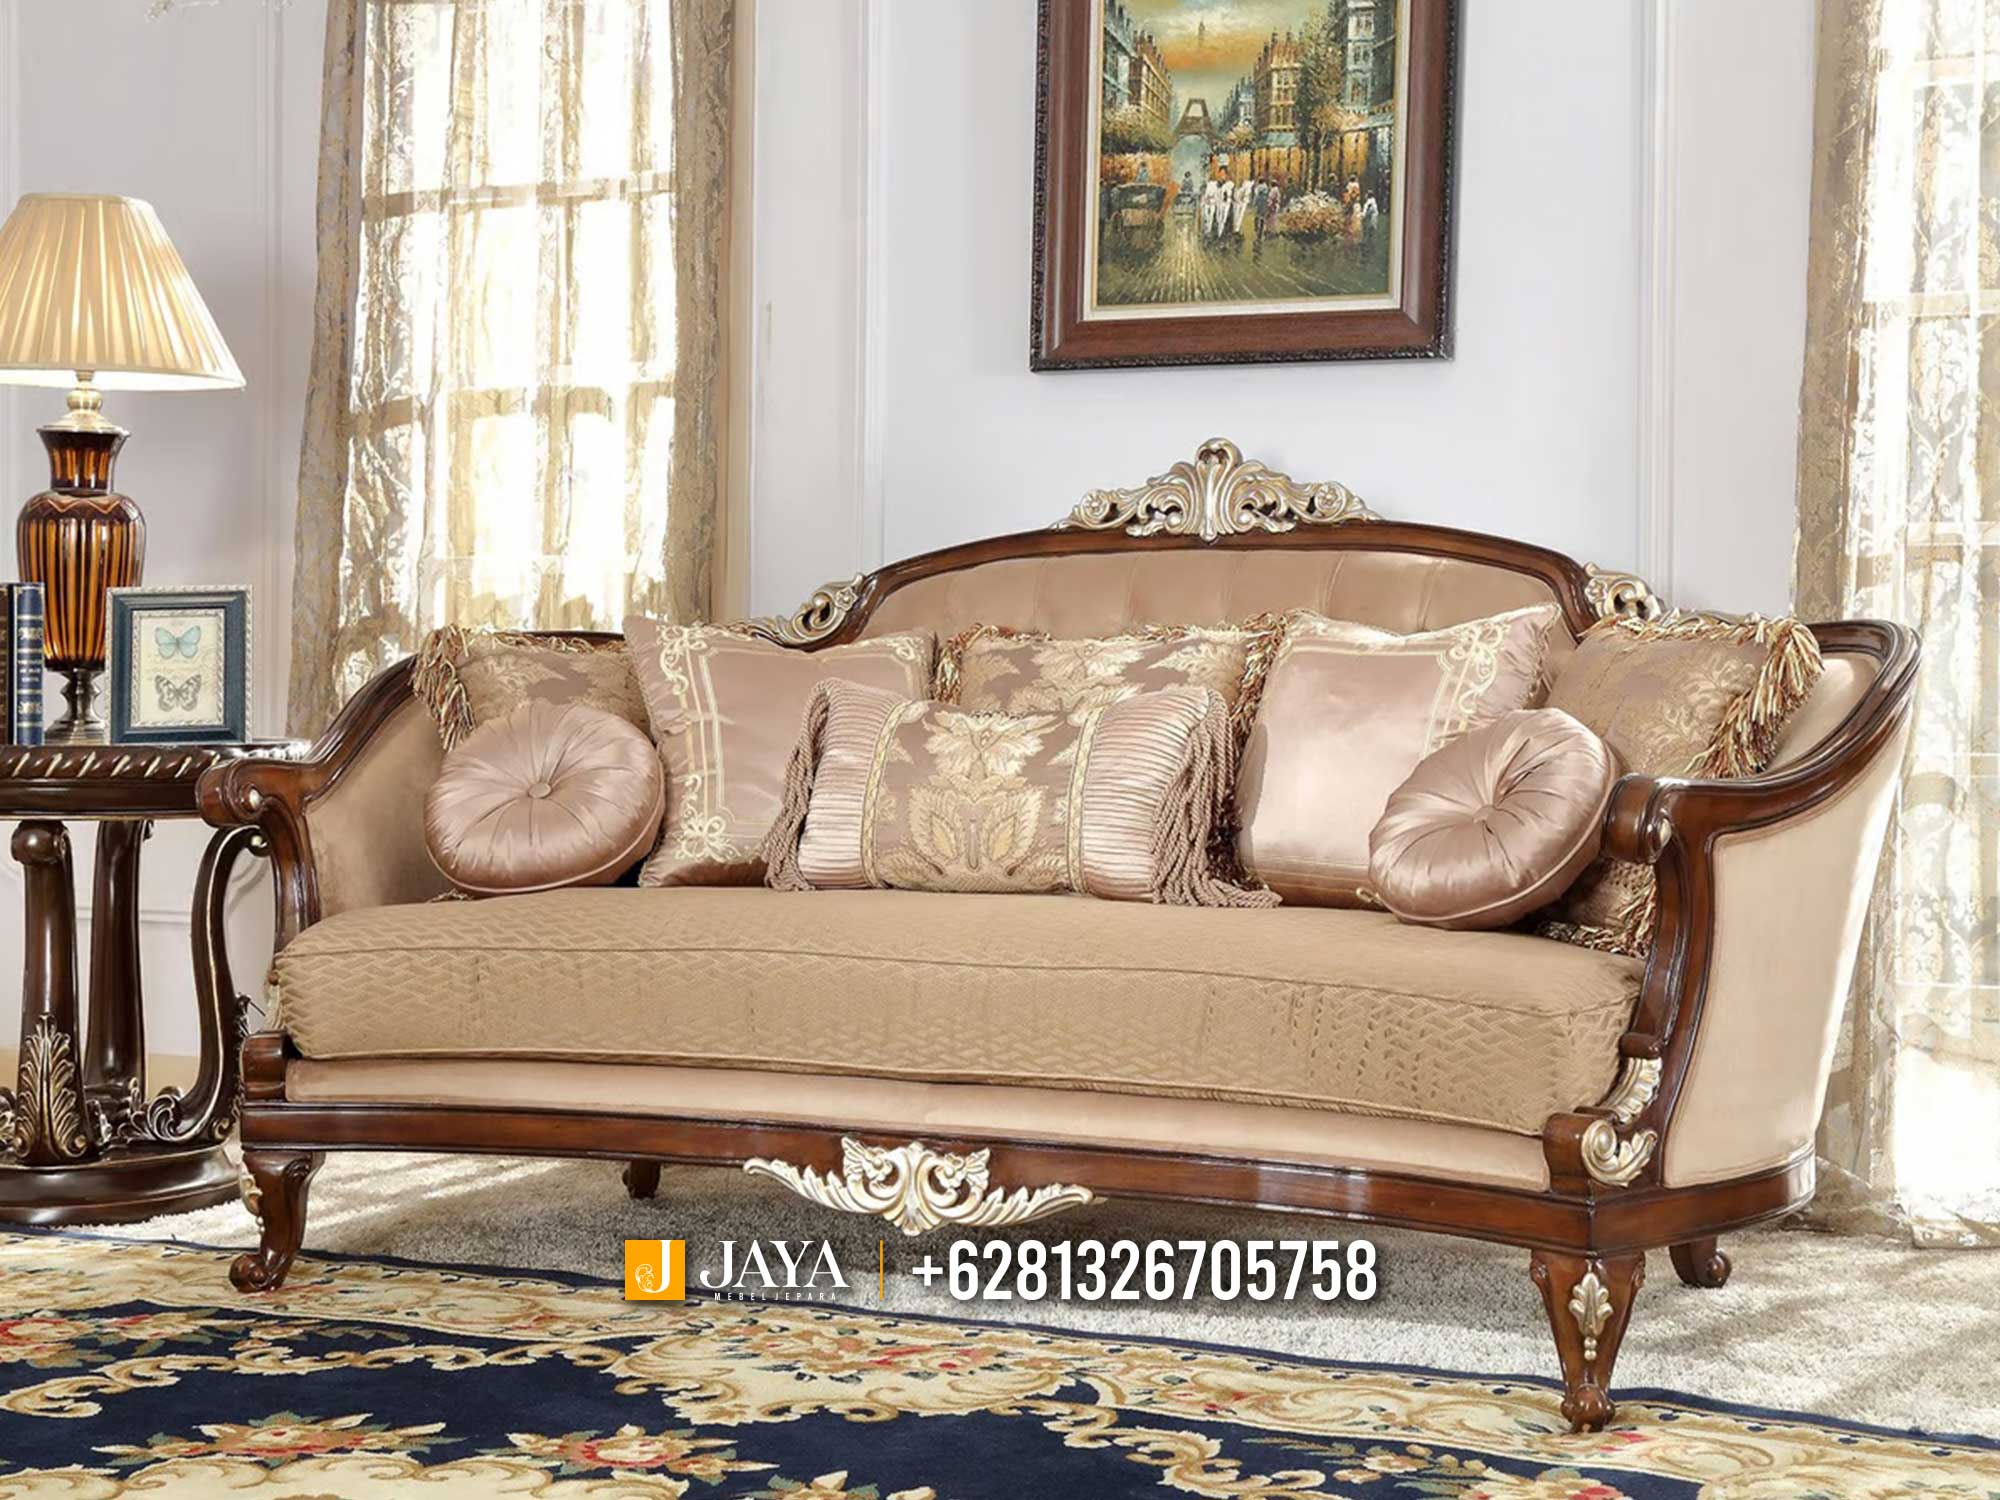 New Sofa Tamu Mewah Jepara Classic Carving Luxury Natural Color JM688.1